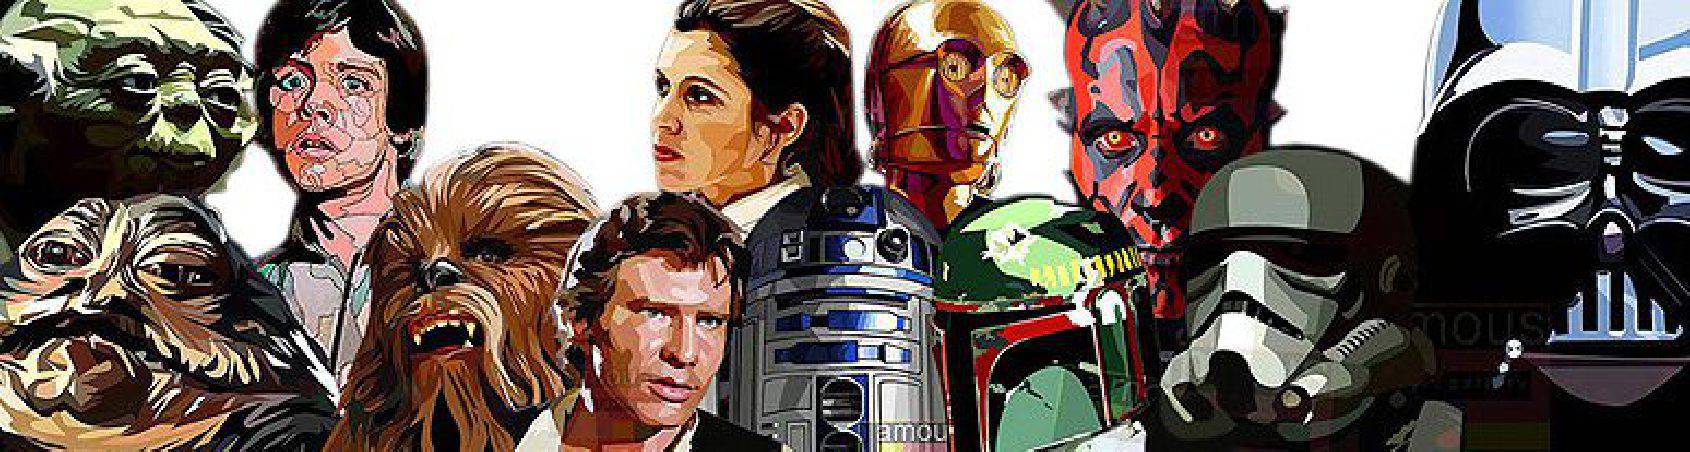 personajes Star-Wars | imágenes para decorar estilo Pop-Art